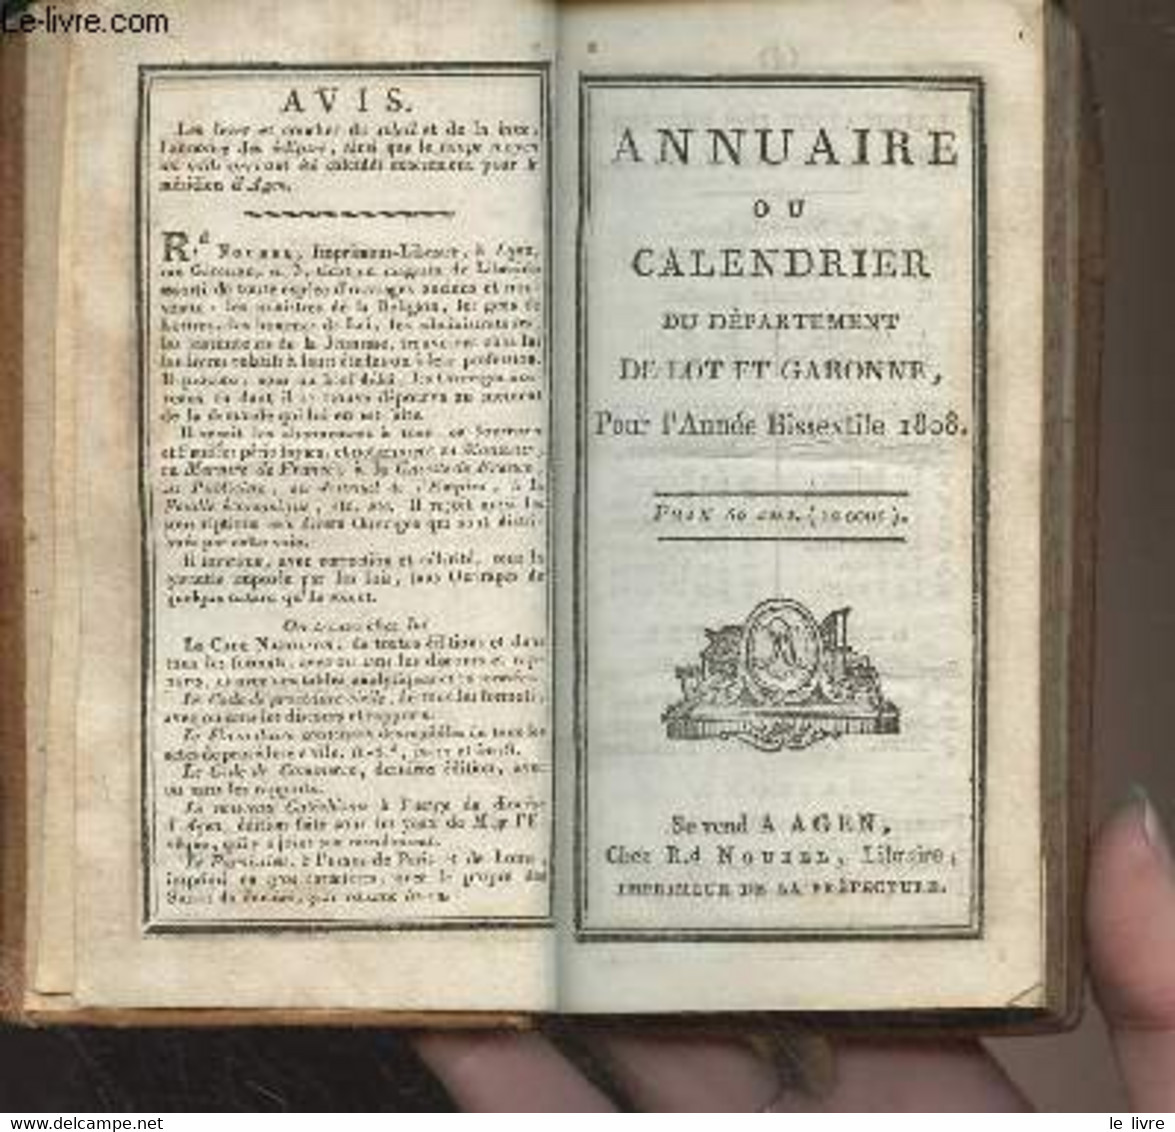 Annuaire Ou Calendrier Du Département De Lot Et Garonne Pour L'année Bissextile 1808 - Collectif - 1808 - Agendas